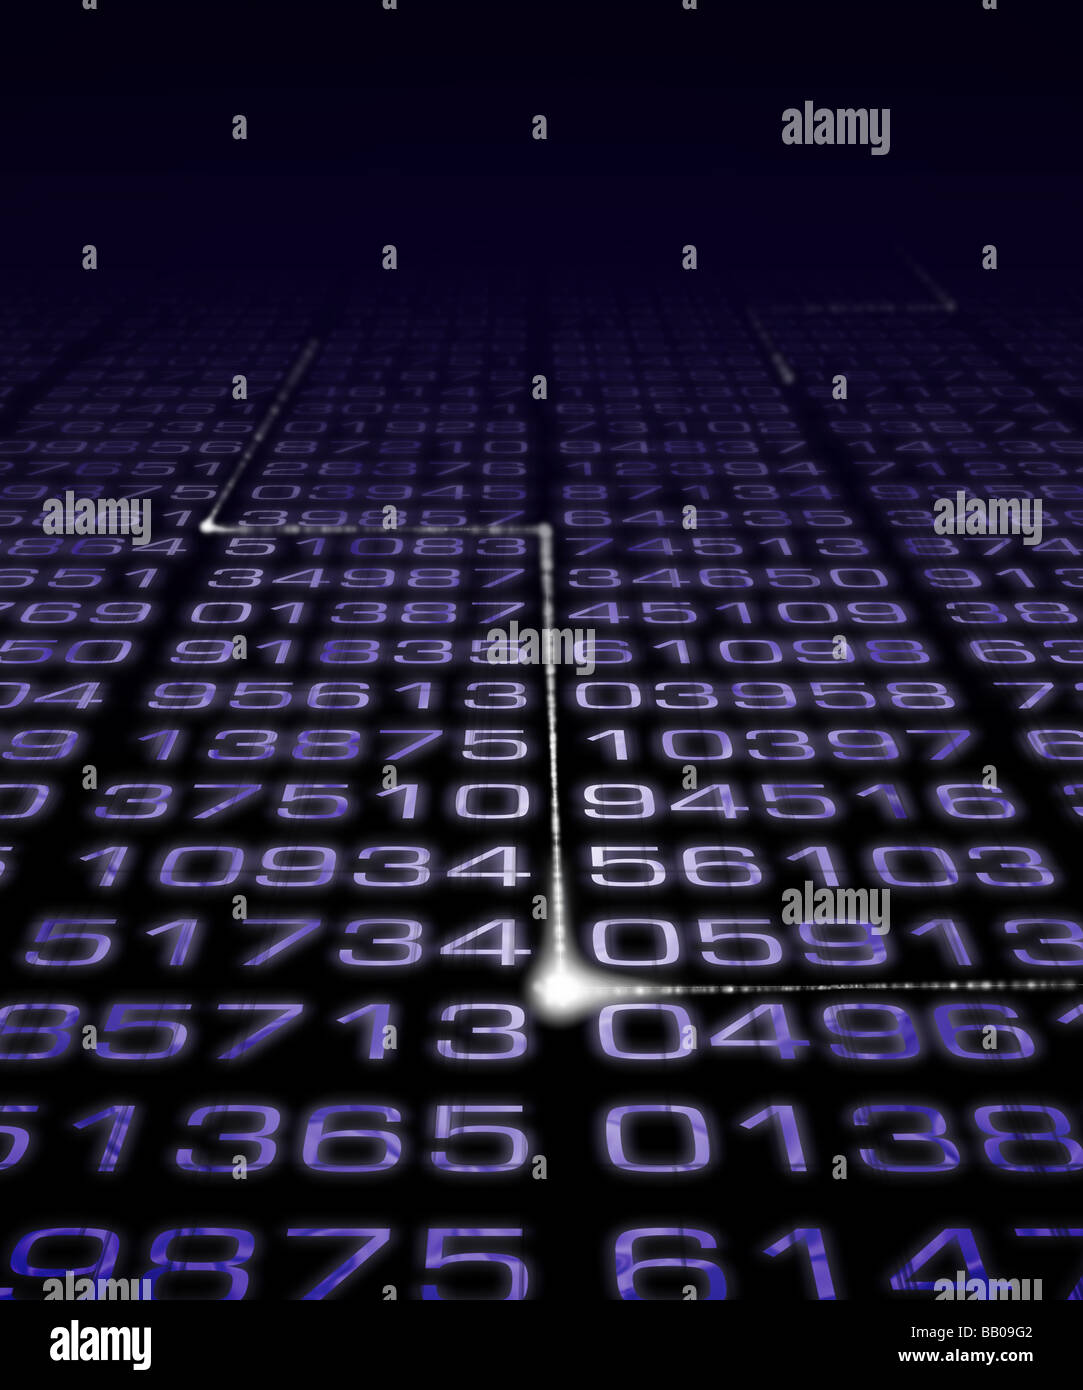 Numéro numérique matrix avec impulsion électronique. Banque D'Images